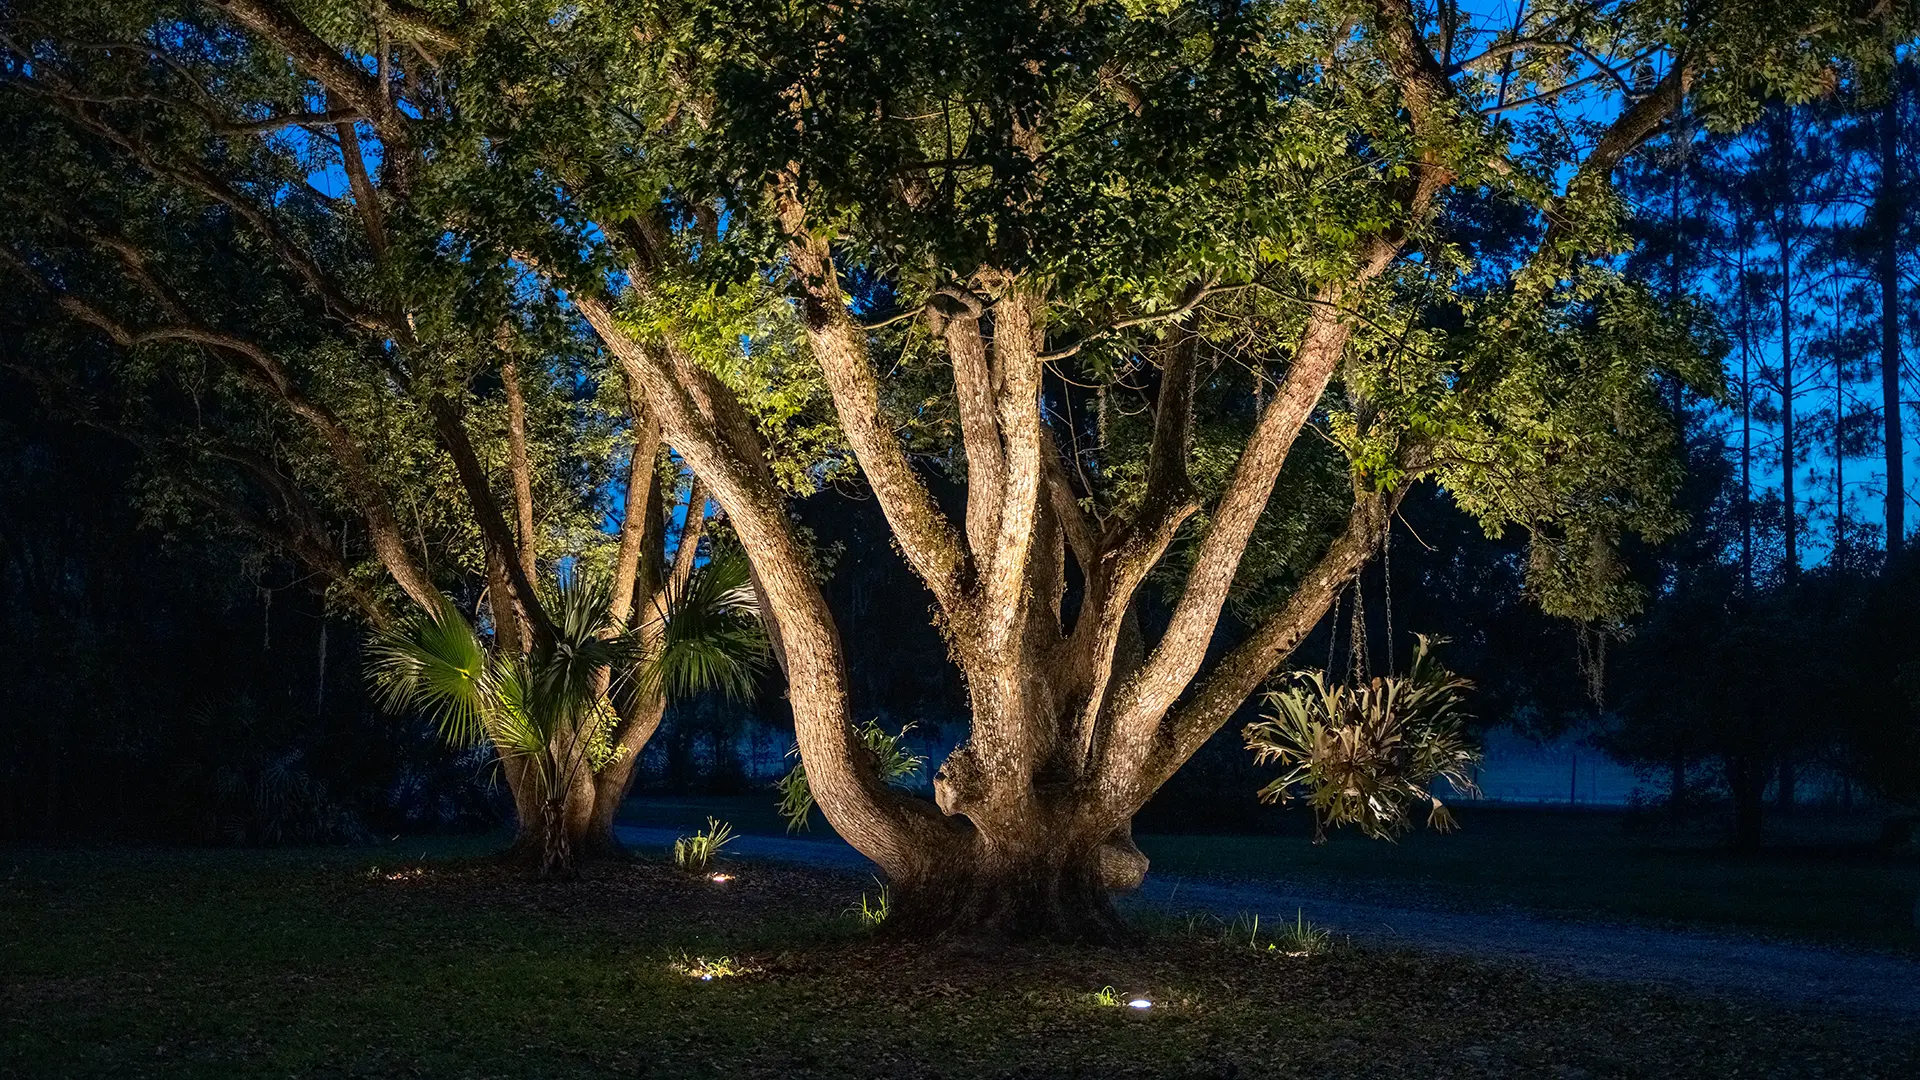 5 Trees That Look The Best In Outdoor Lighting